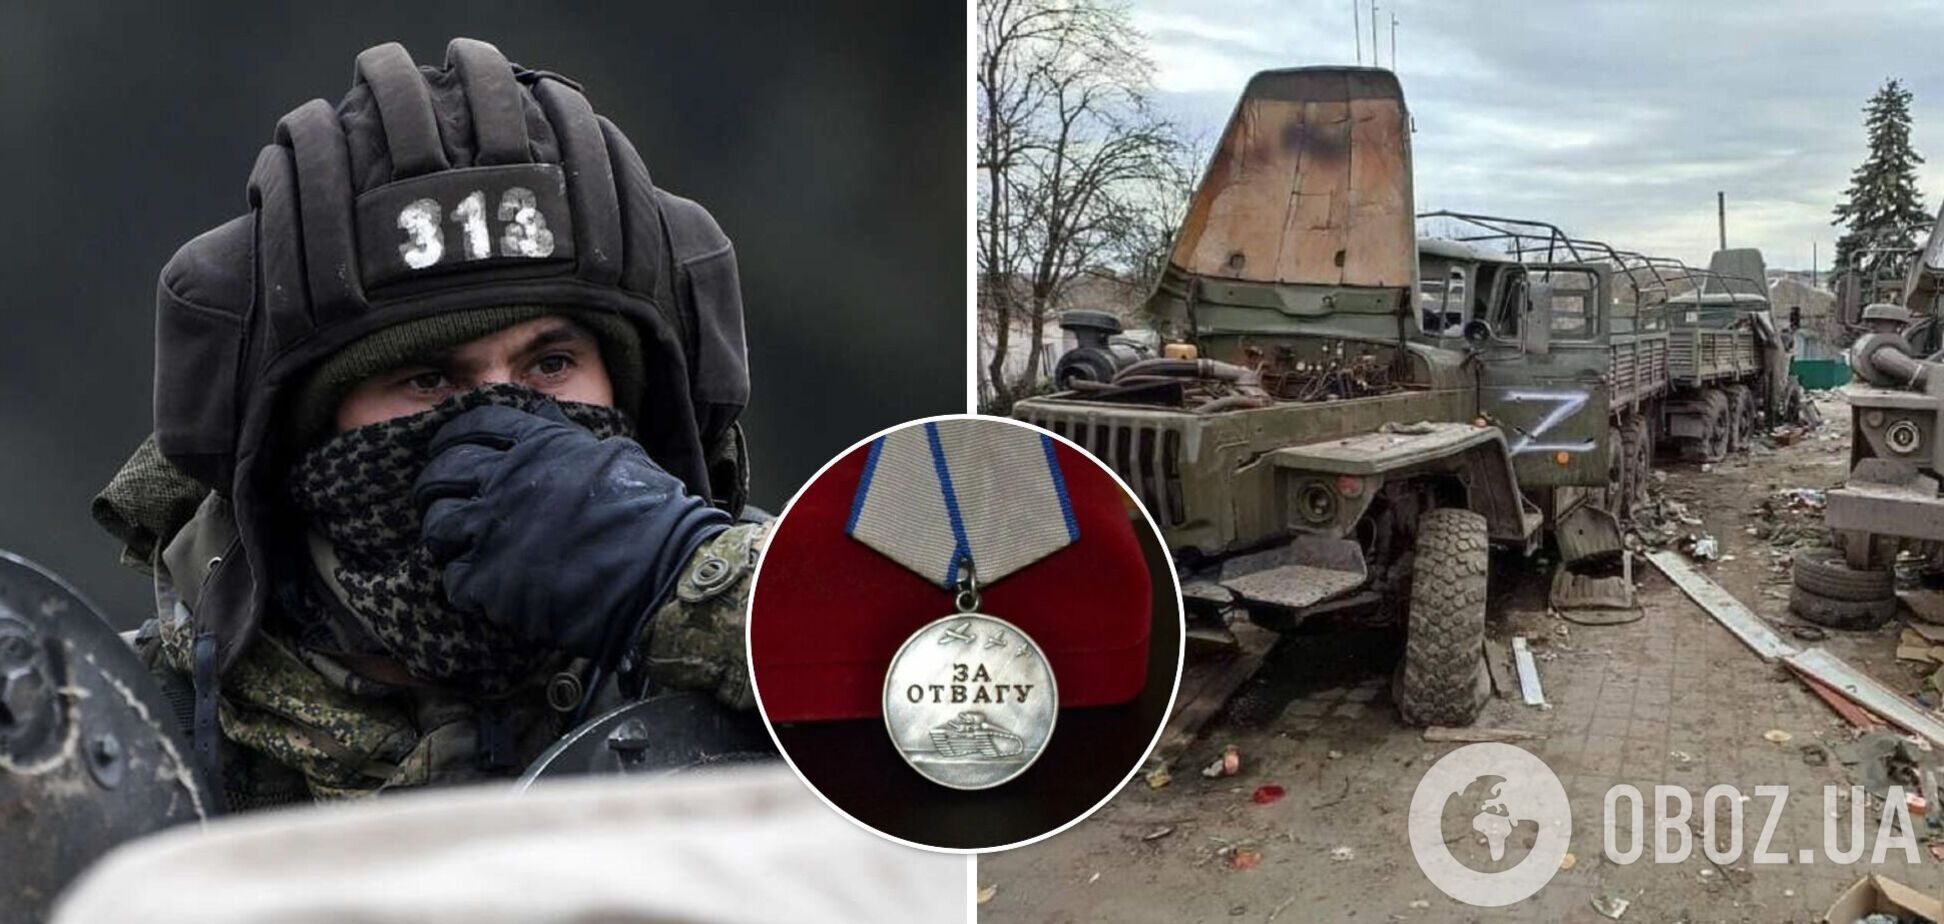 'Любого шороха боюсь!' Оккупант 'отказался' от медали за войну в Украине и попросился домой. Аудио